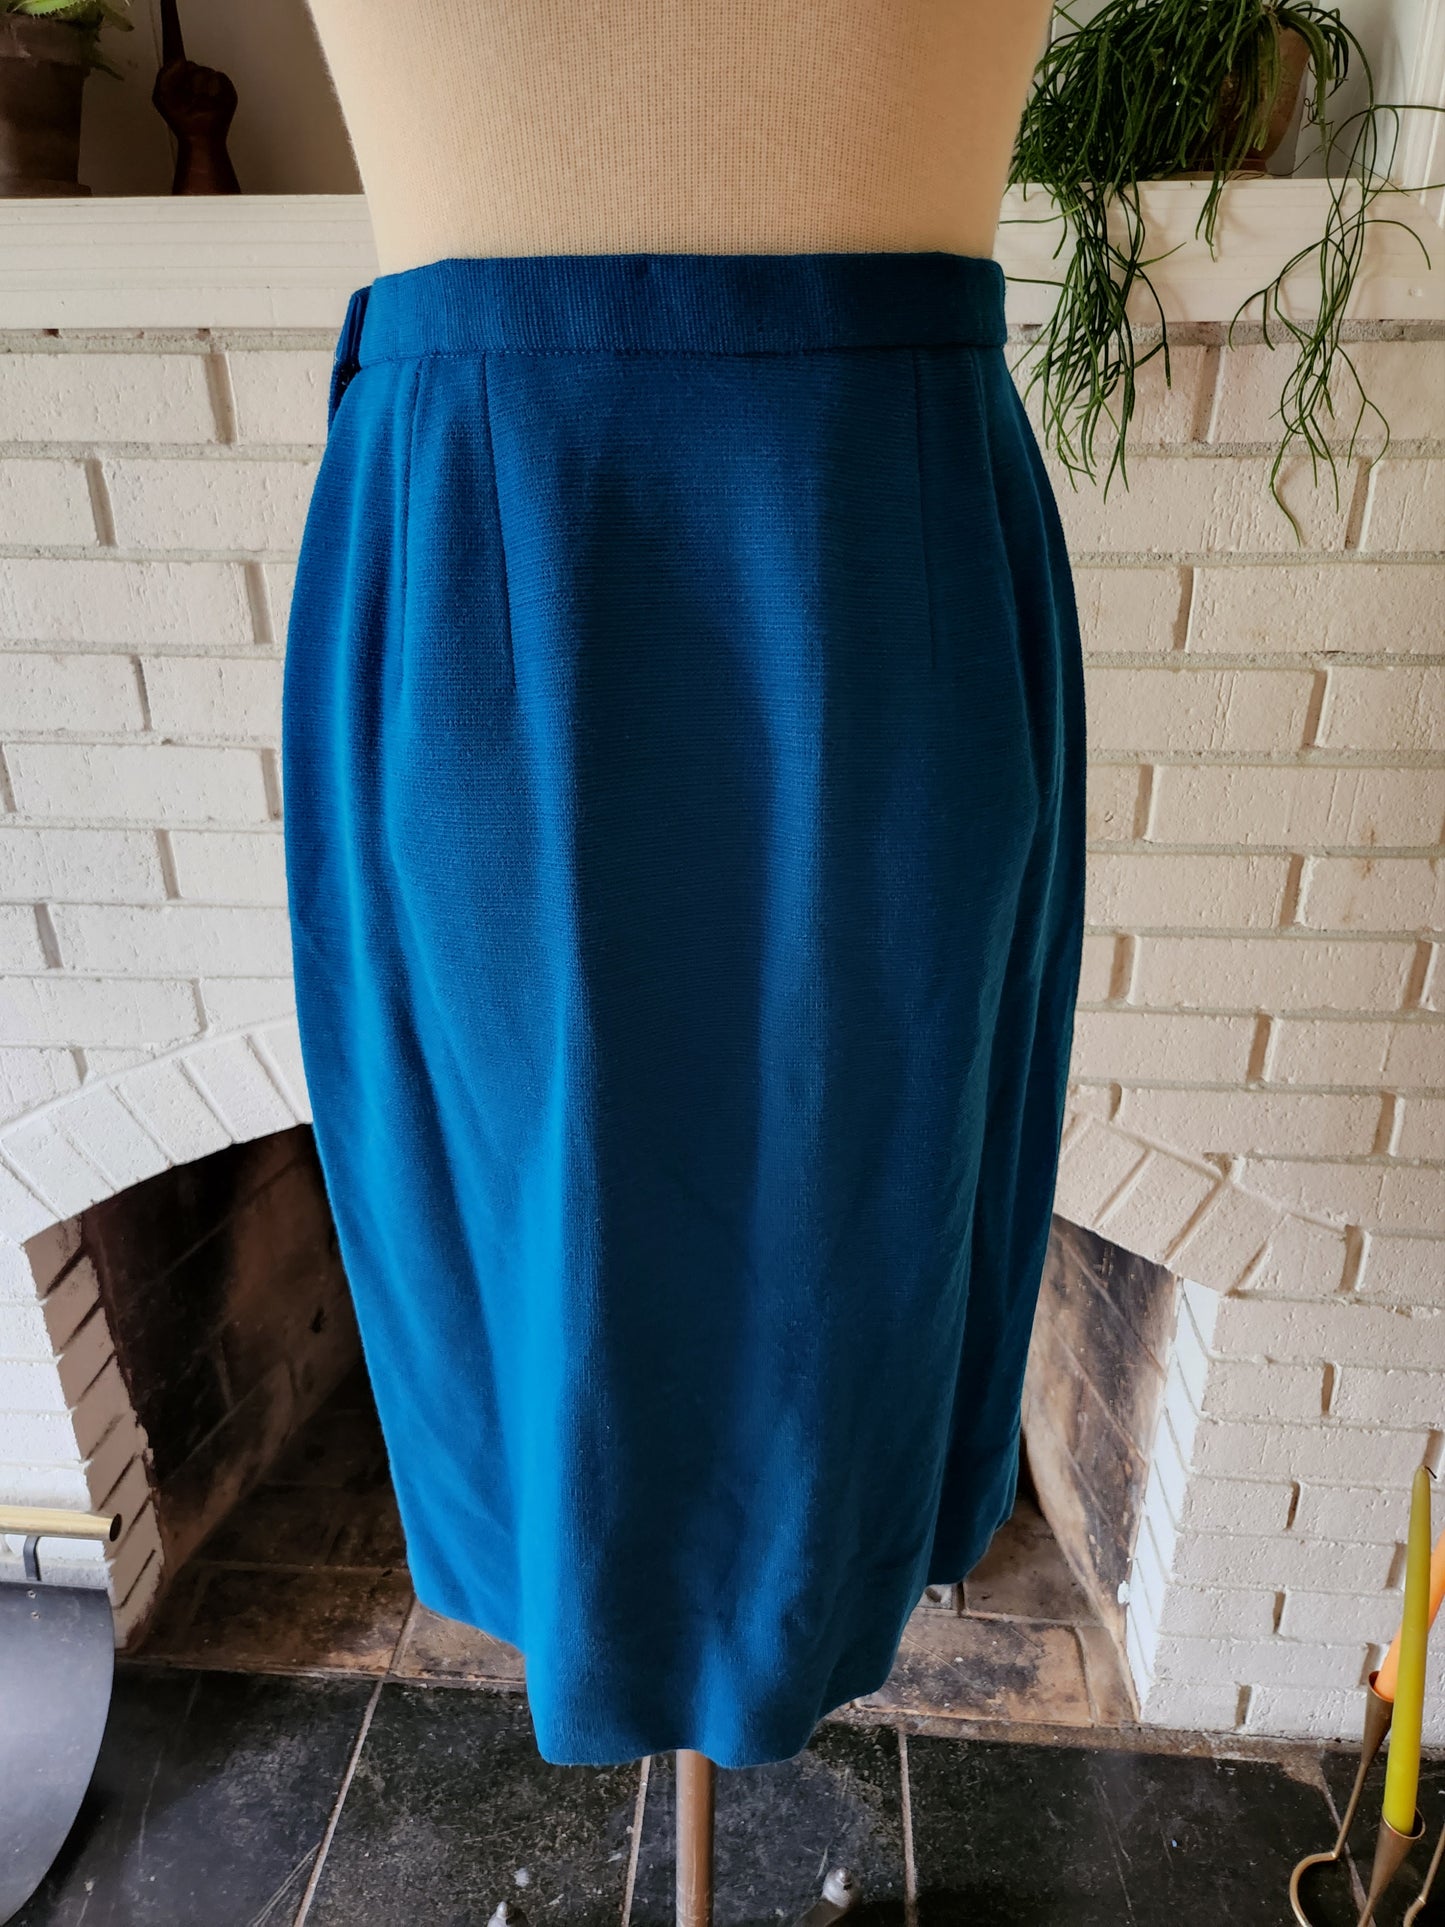 Vintage Teal Blue Pleasted Skirt